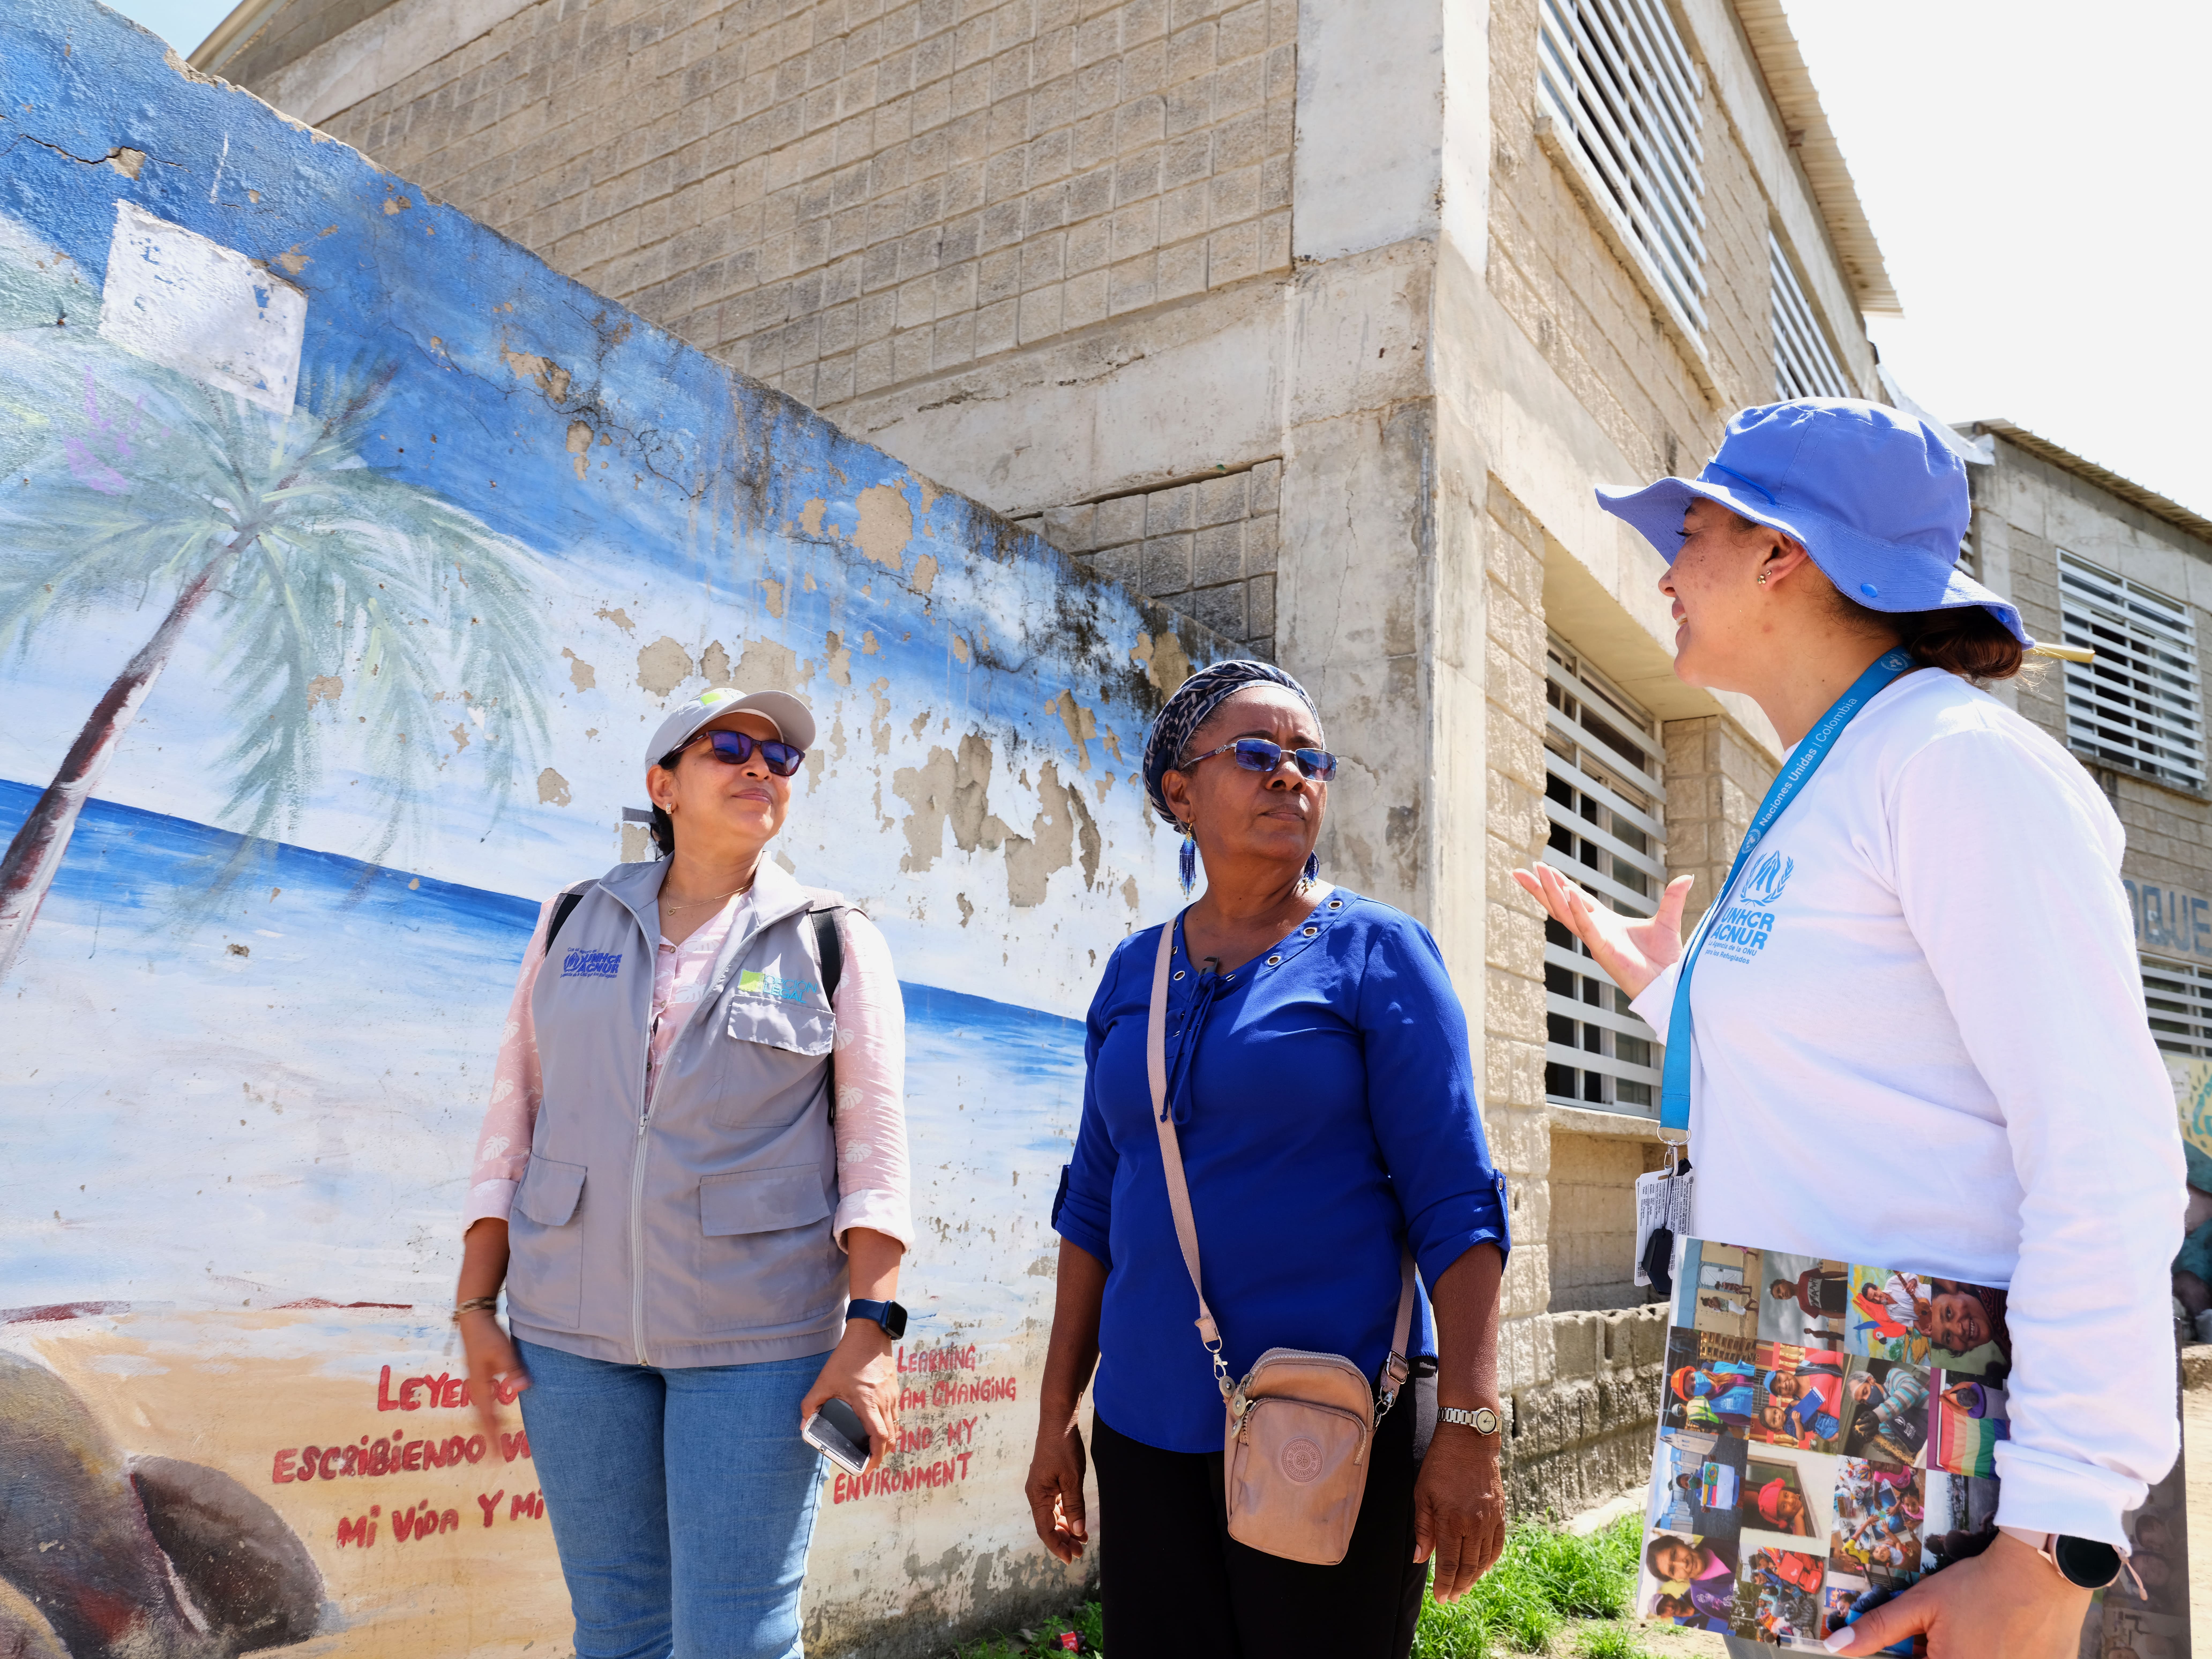 Adriana Pita, Associada do ACNUR para a Educação, conversa com o presidente da escola Tierra Bomba em Cartagena, juntamente com Glendis Paredes